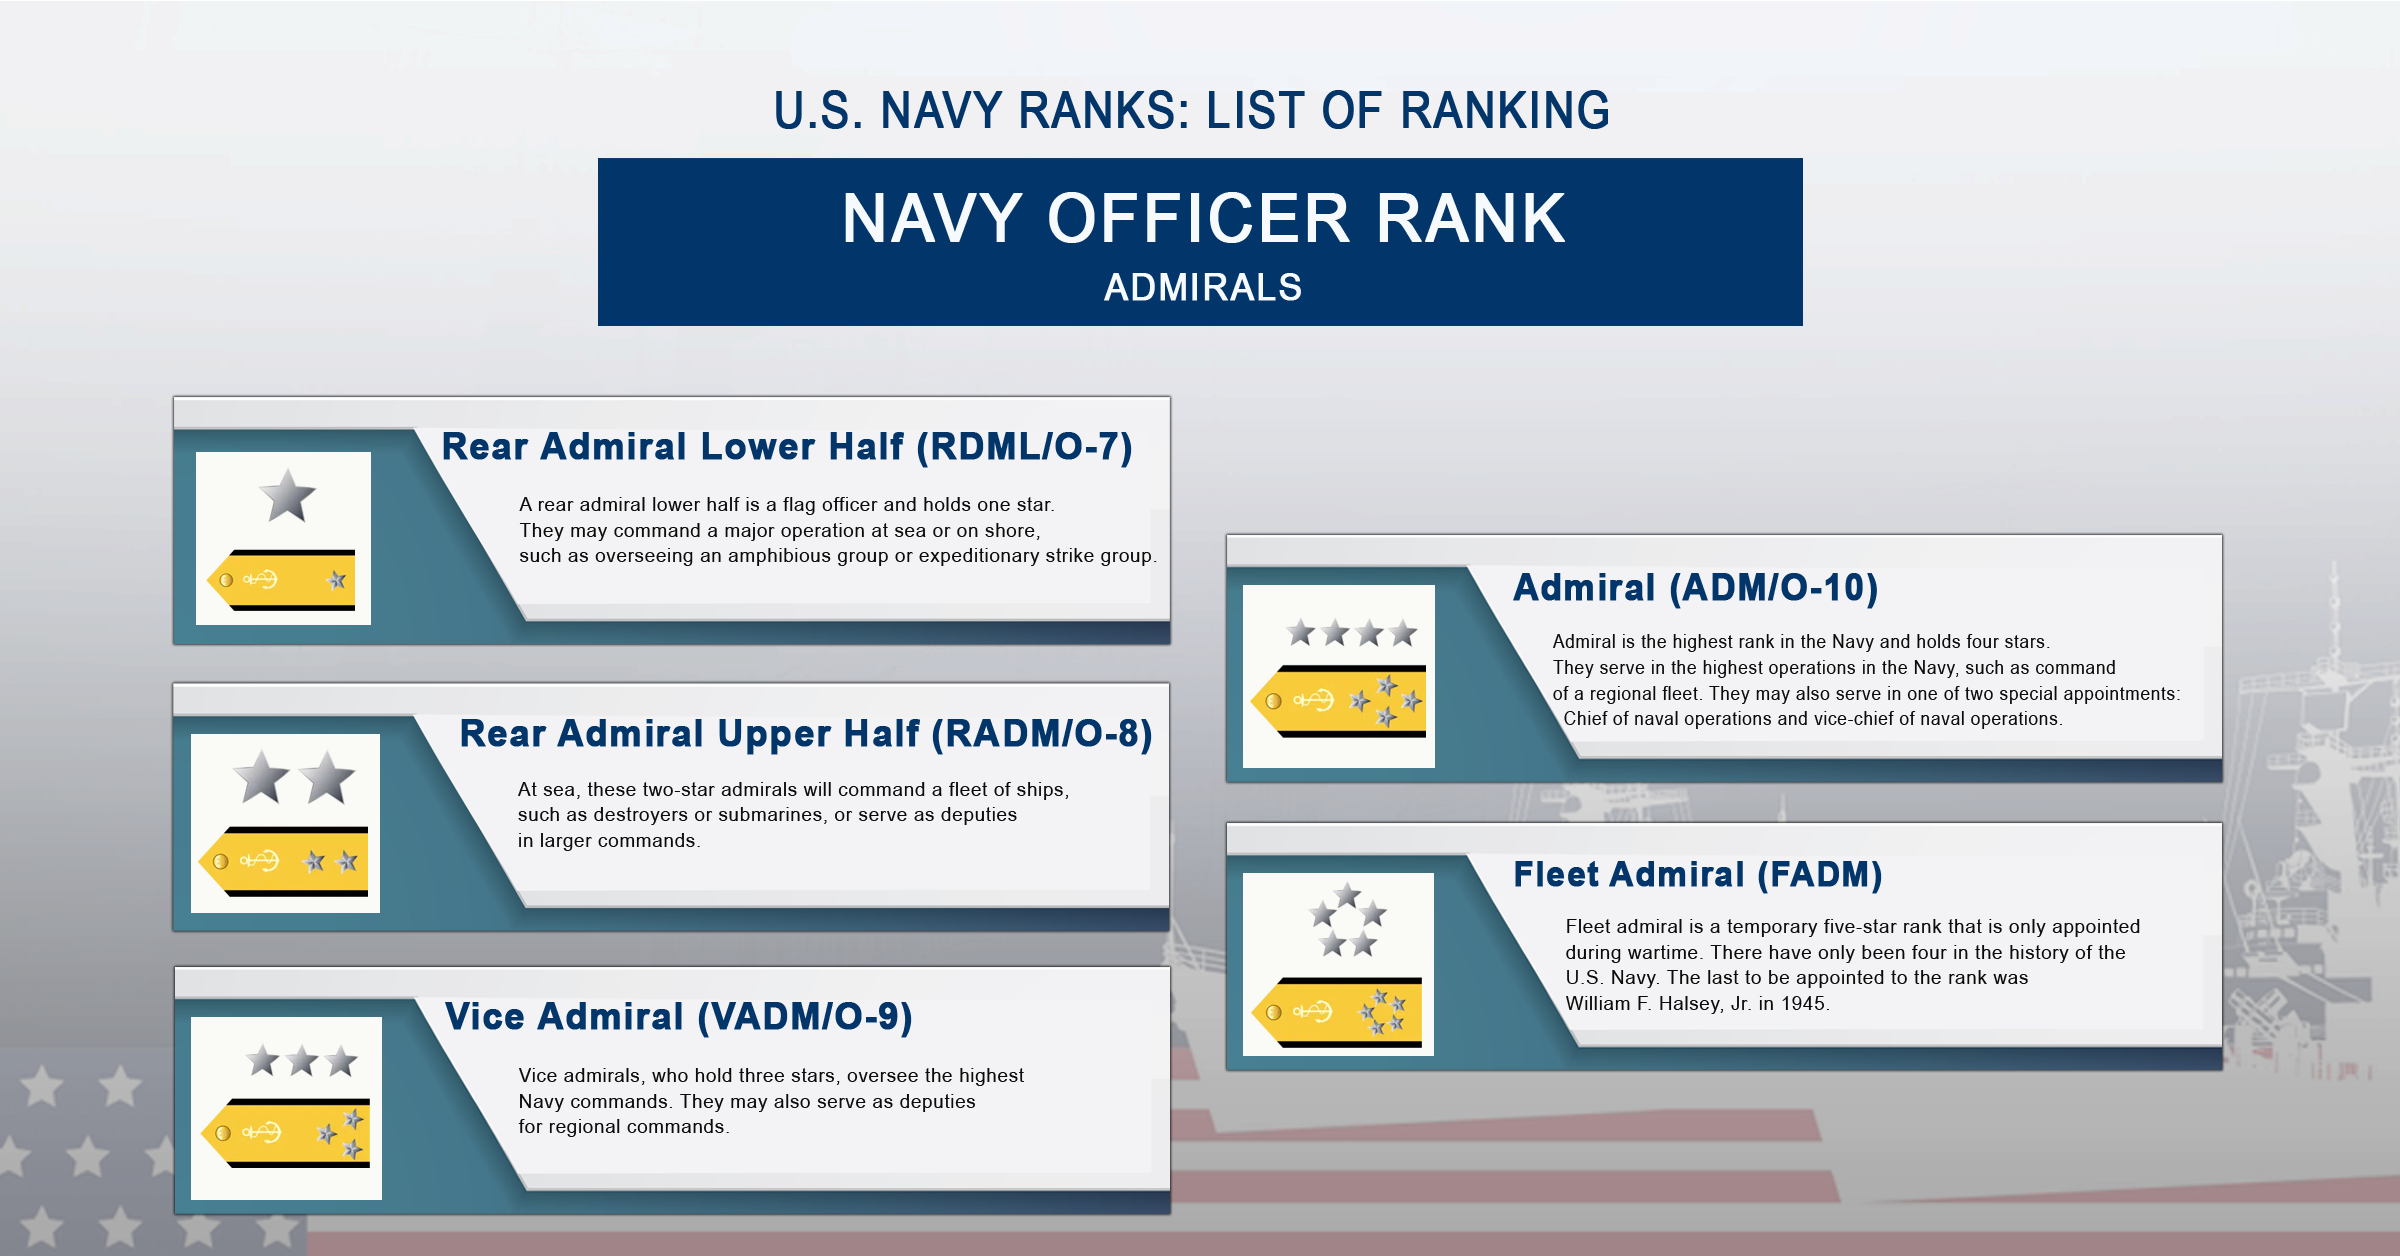 U.S. Navy admirals